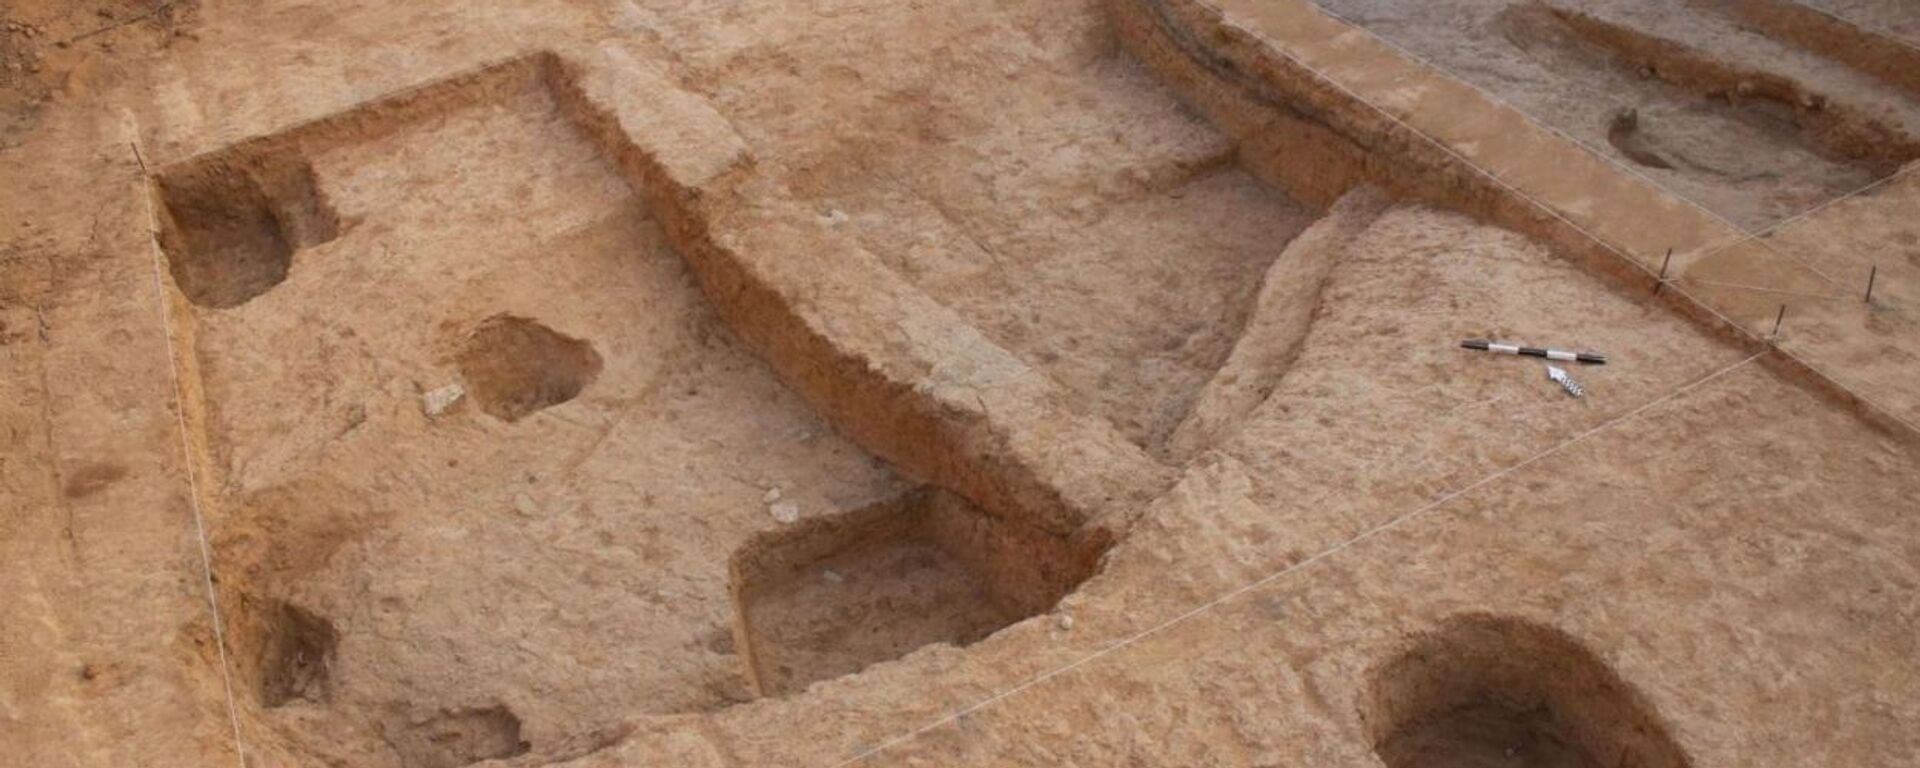 6,500-Year-Old Copper Workshop Uncovered in the Negev Desert’s Beer Sheva - Sputnik International, 1920, 13.10.2020